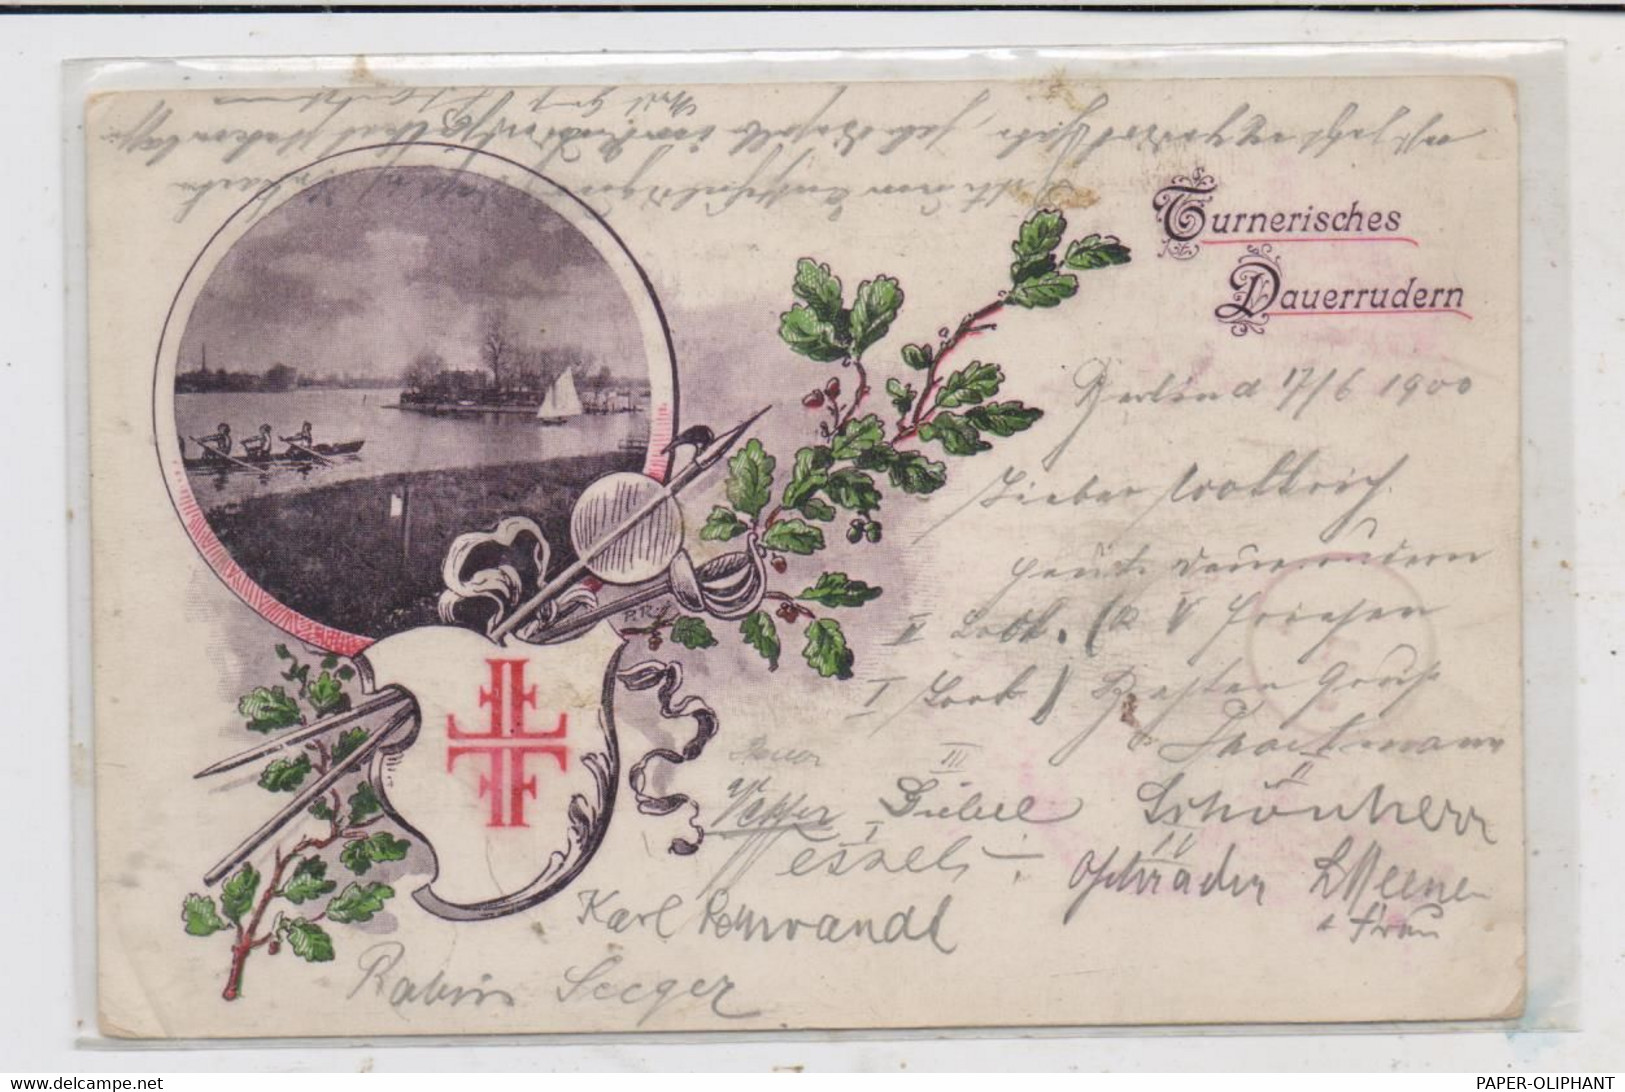 SPORT - RUDERN / Rowing, Turnerisches Dauerrudern, 1900 - Canottaggio